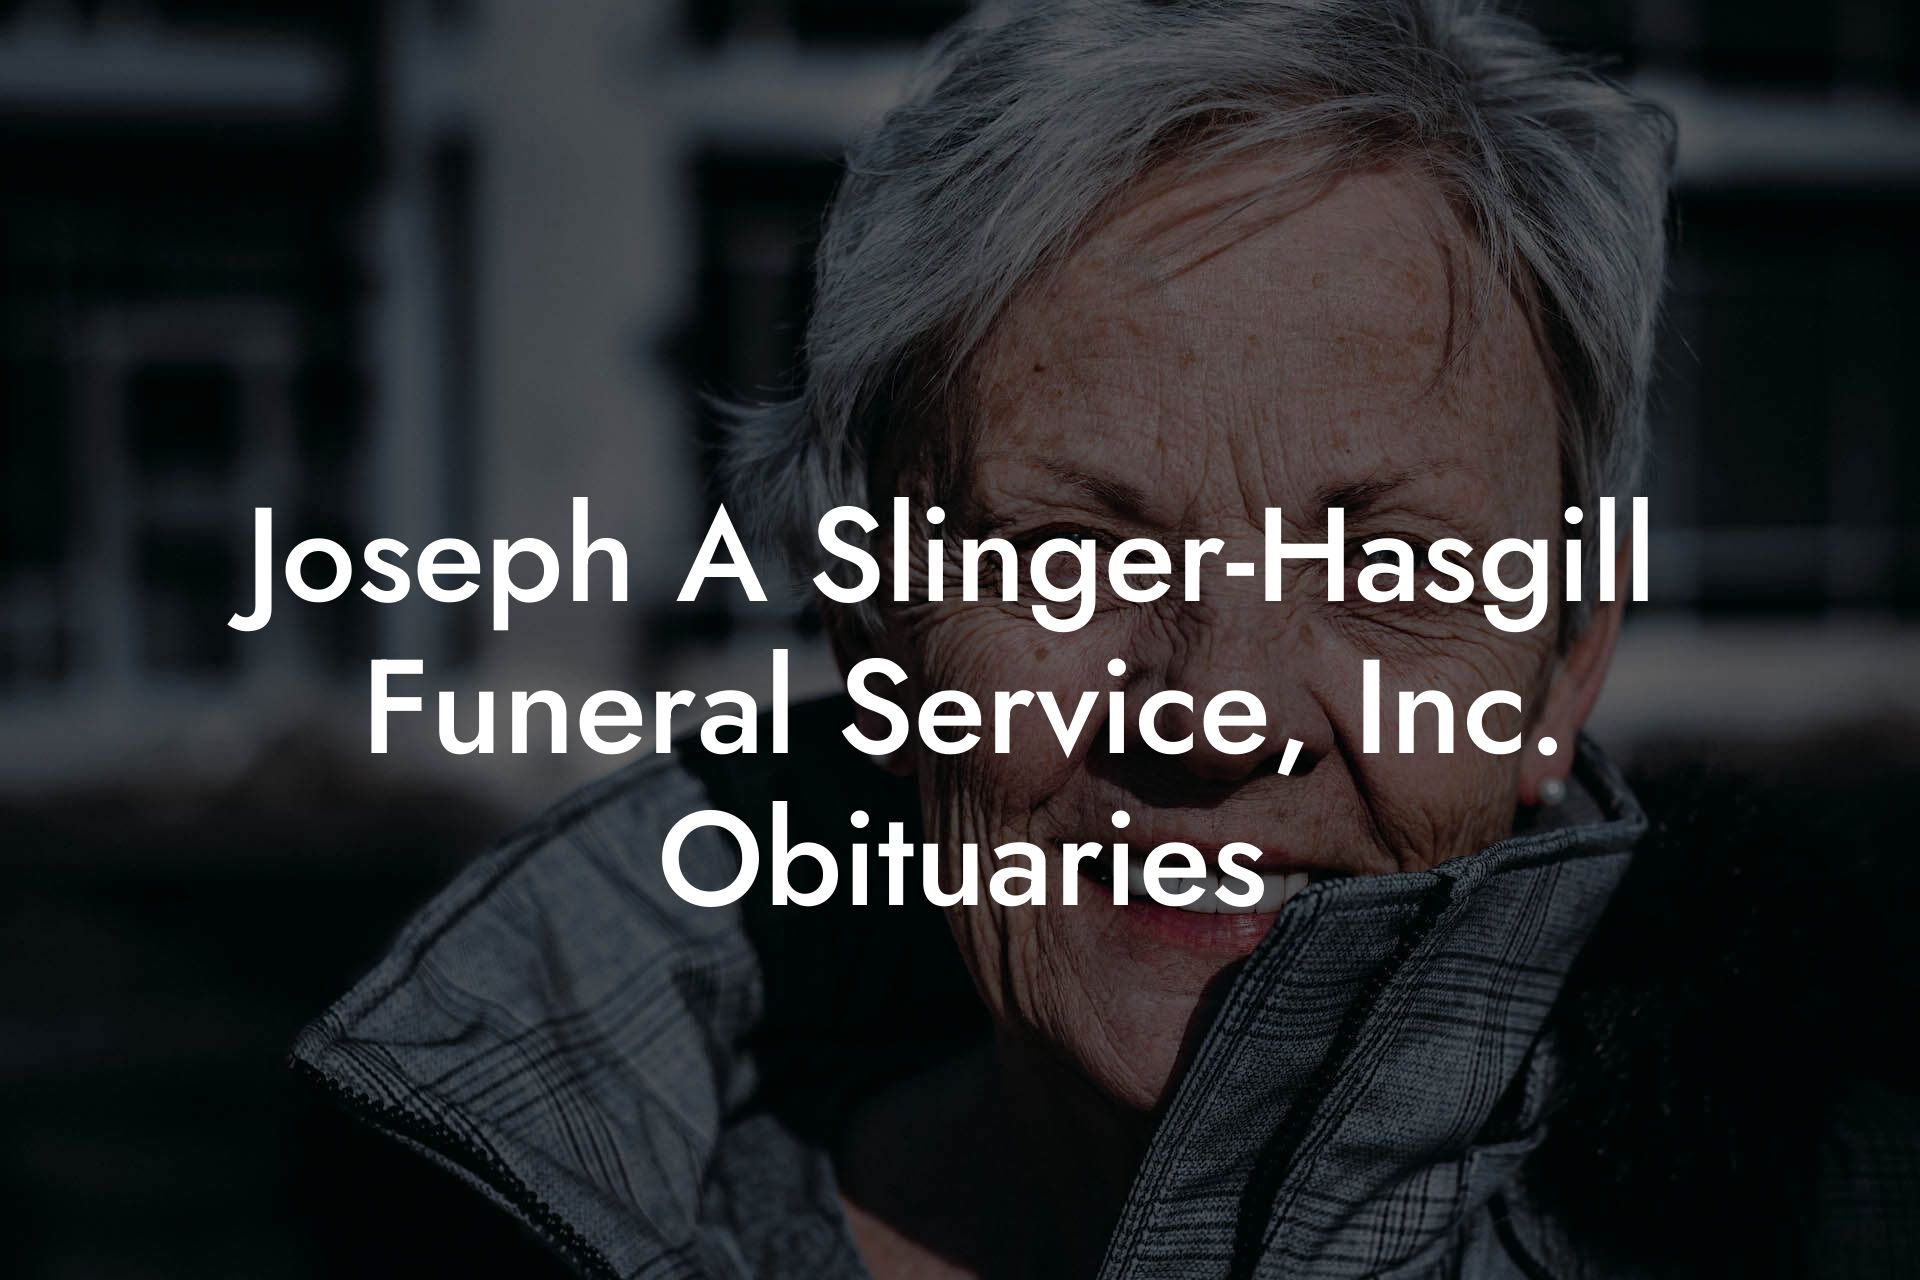 Joseph A Slinger-Hasgill Funeral Service, Inc. Obituaries